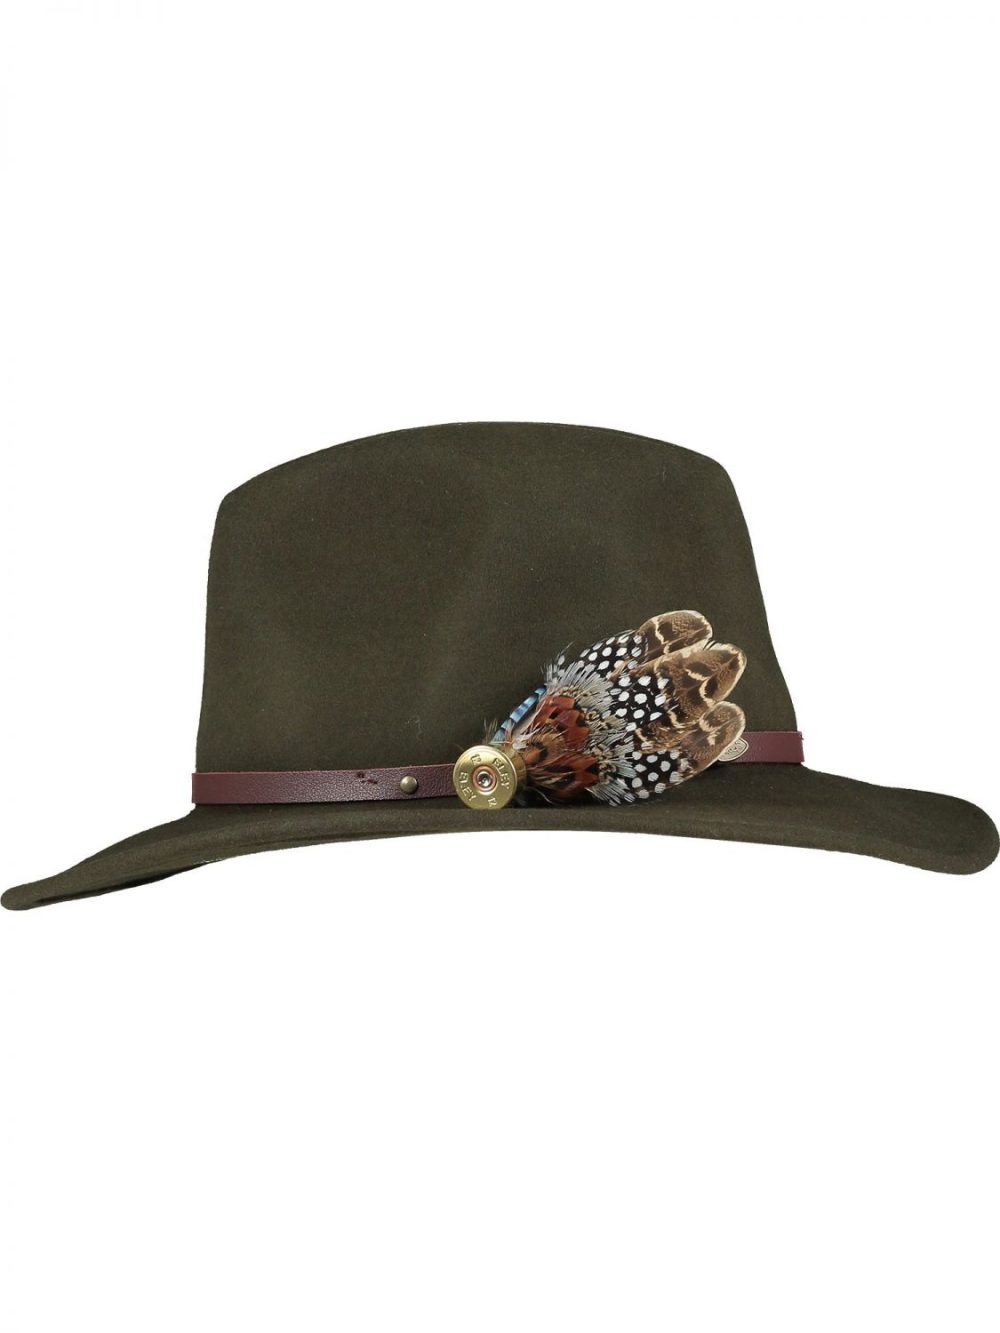 Medium Natural Pin and Hat